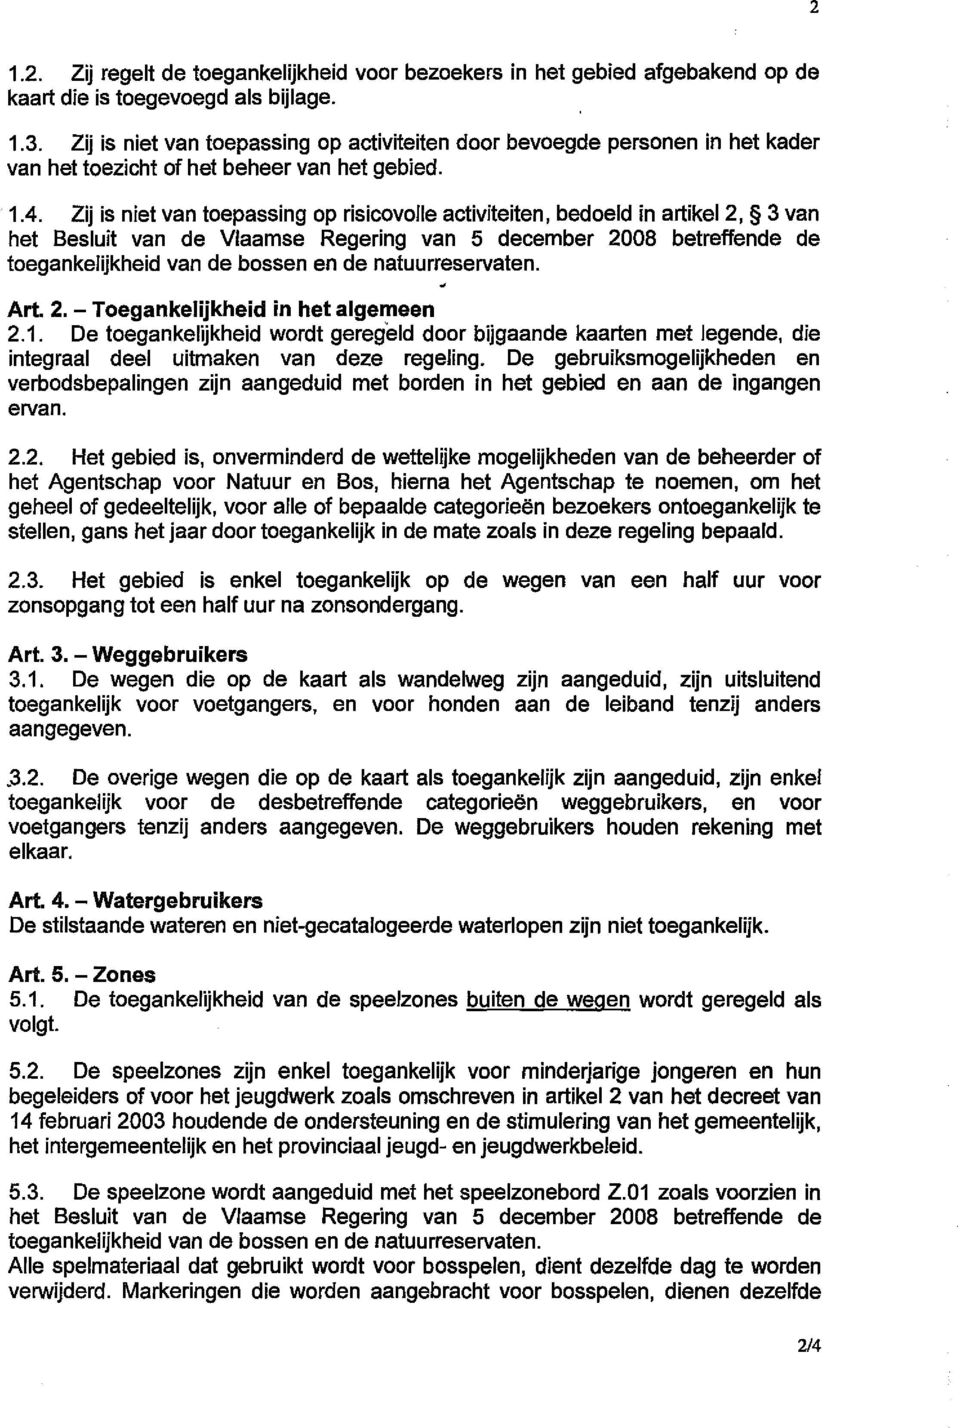 Zij is niet van toepassing op risicovolle activiteiten, bedoeld in artikel2, 3 van het Besluit van de Vlaamse Regering van 5 december 2008 betreffende de toegankelijkheid van de bossen en de